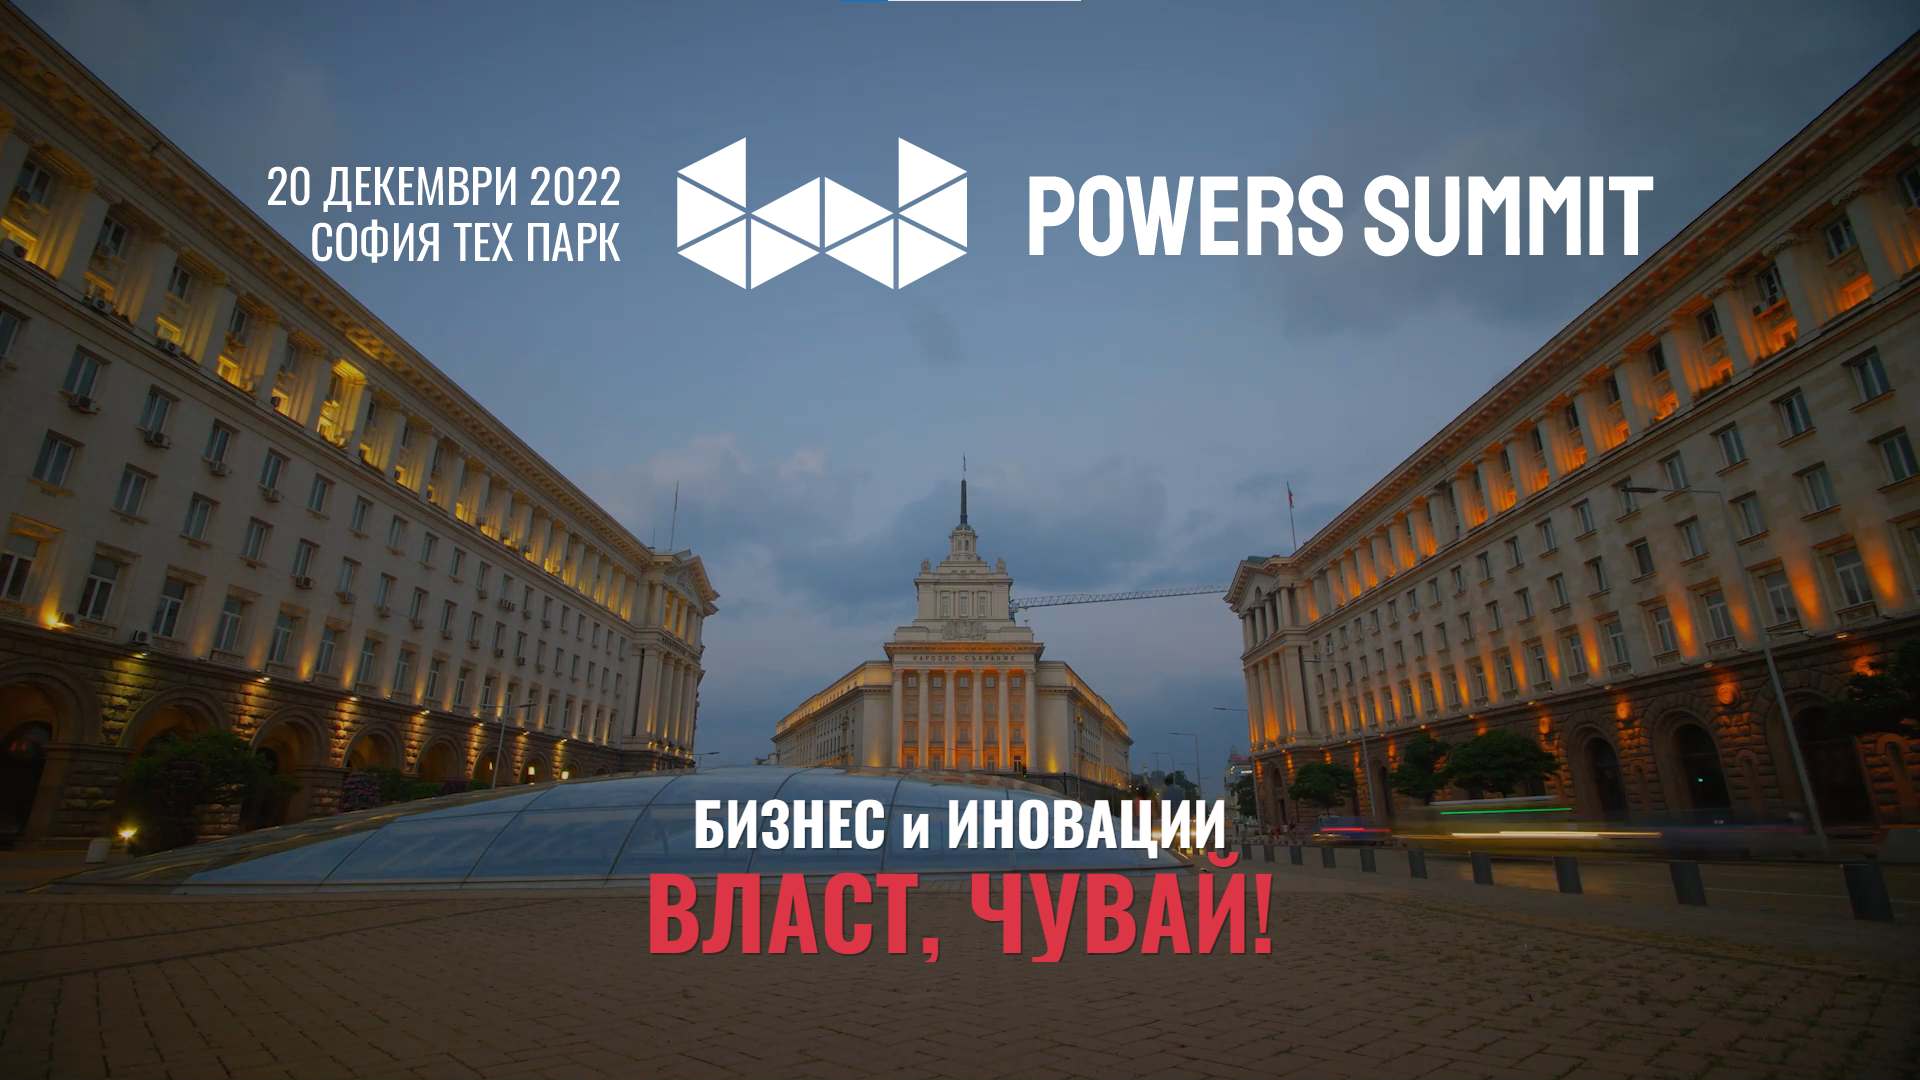 Powers Summit 2022 ВЛАСТ, ЧУВАЙ!